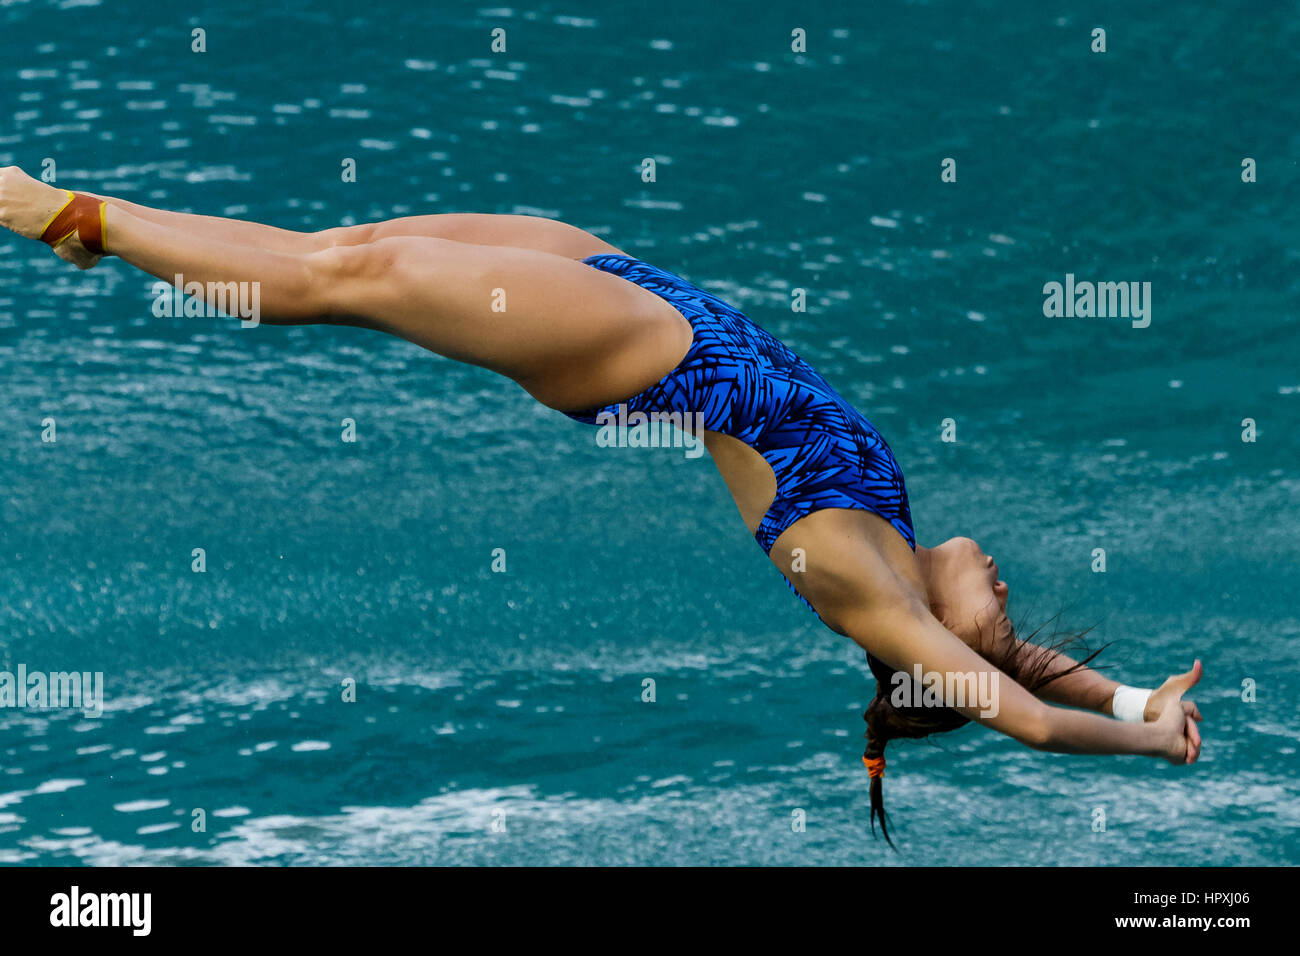 Rio de Janeiro, Brésil. 14 août 2016 Esther Qin (AUS) participe au tremplin 3m Femmes Plongée sous-marine à la finale des Jeux Olympiques d'été de 2016. ©PAUL J. Sutt Banque D'Images